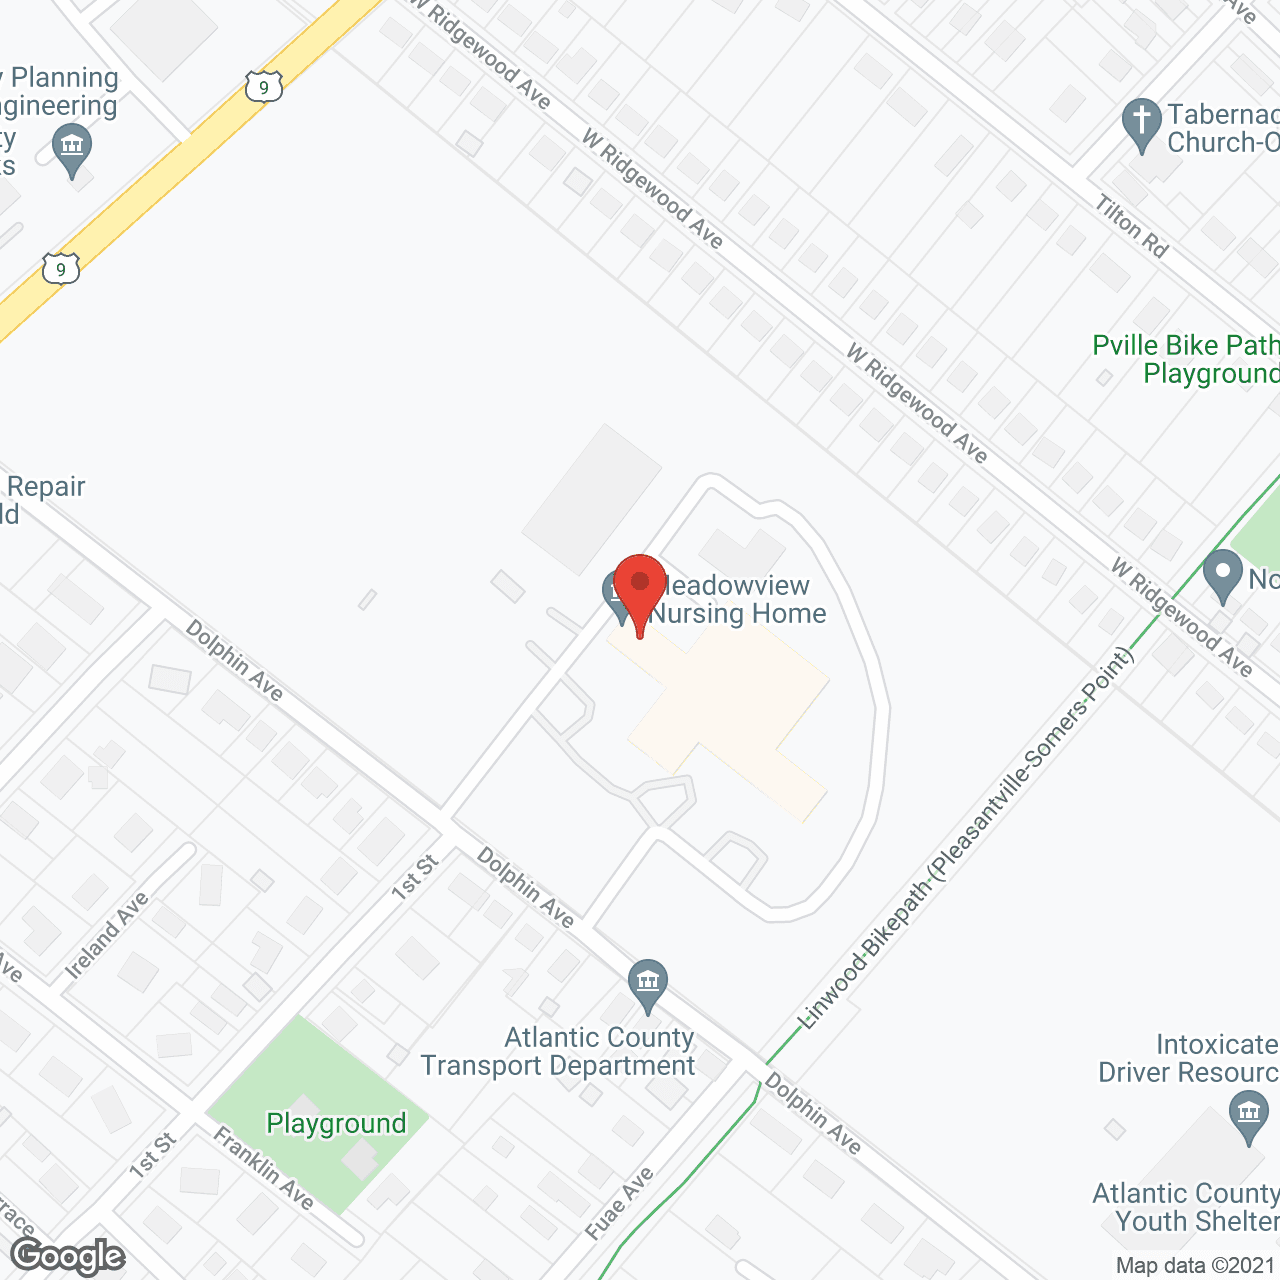 Meadowview Nursing Home in google map